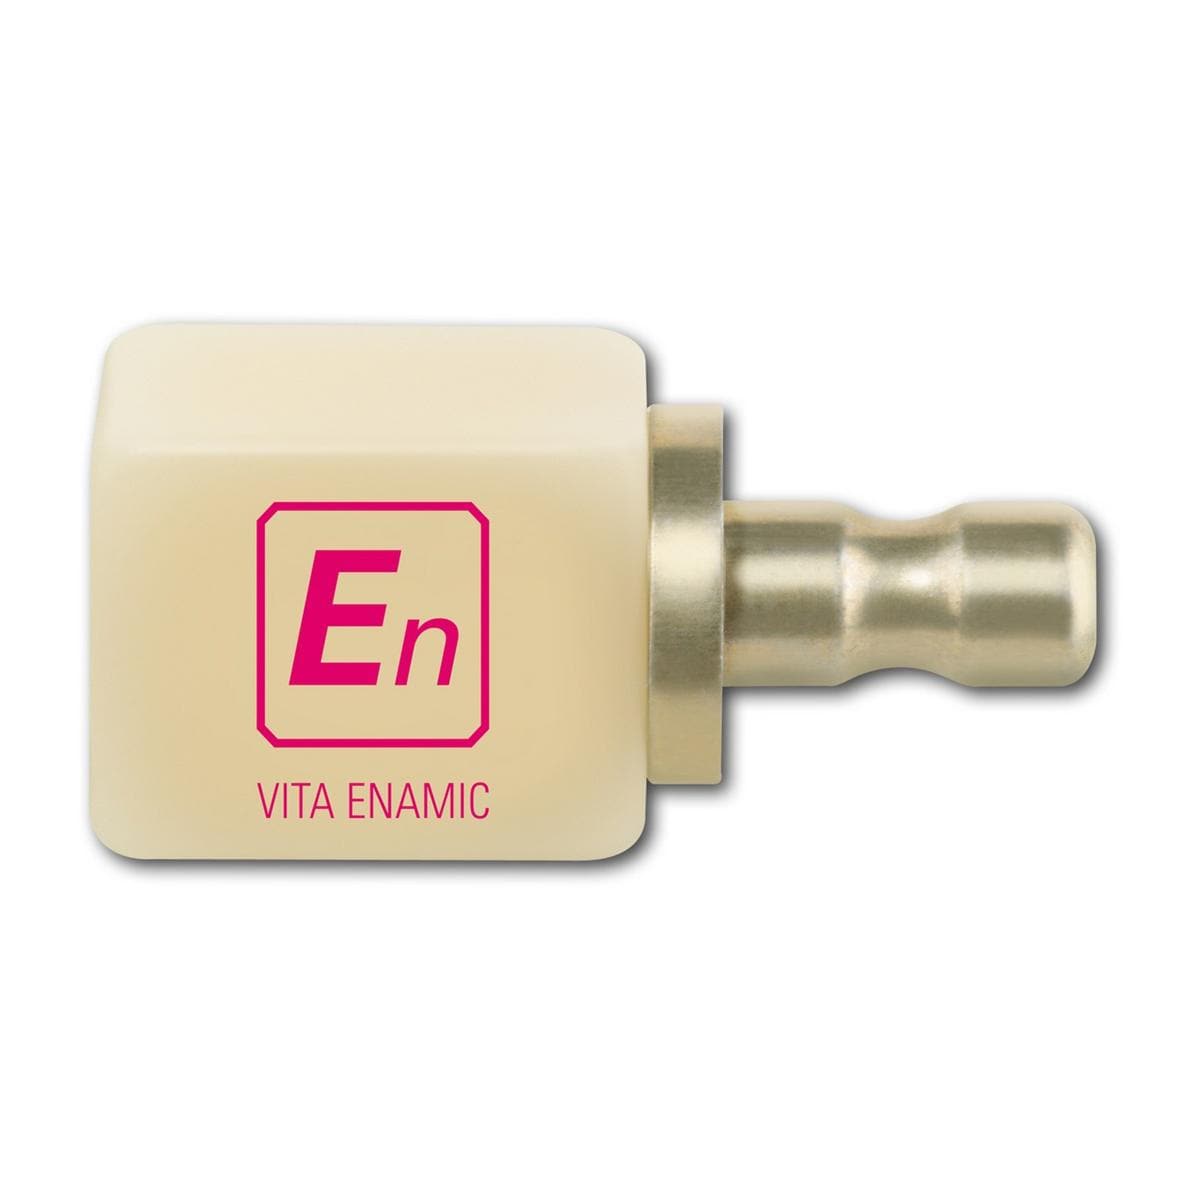 Vita Enamic EM 14 - T, 2M2 EM-14